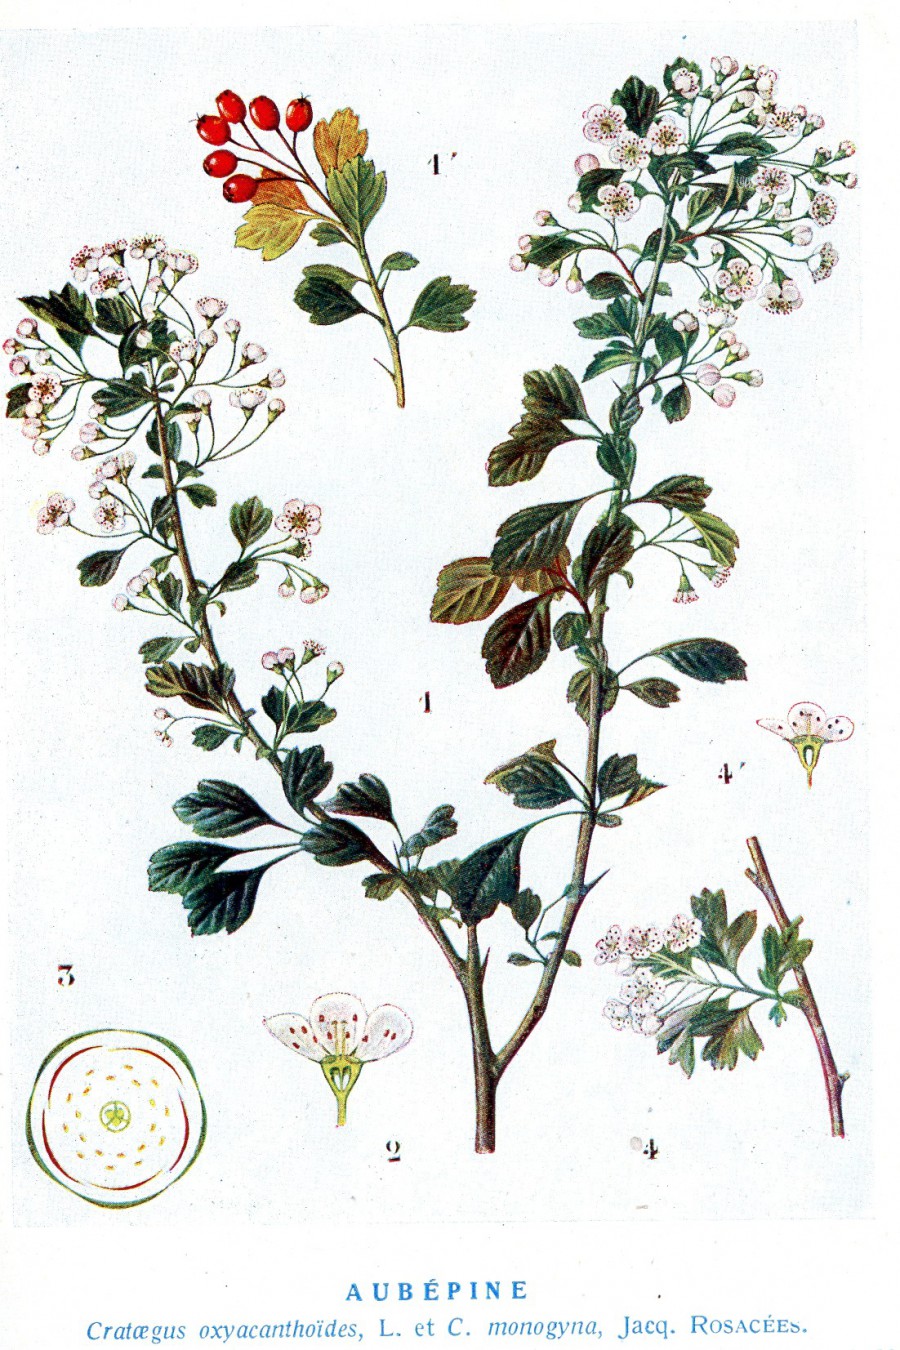 Tisane biologique à l'aubépine et à l'hibiscus - Traditional